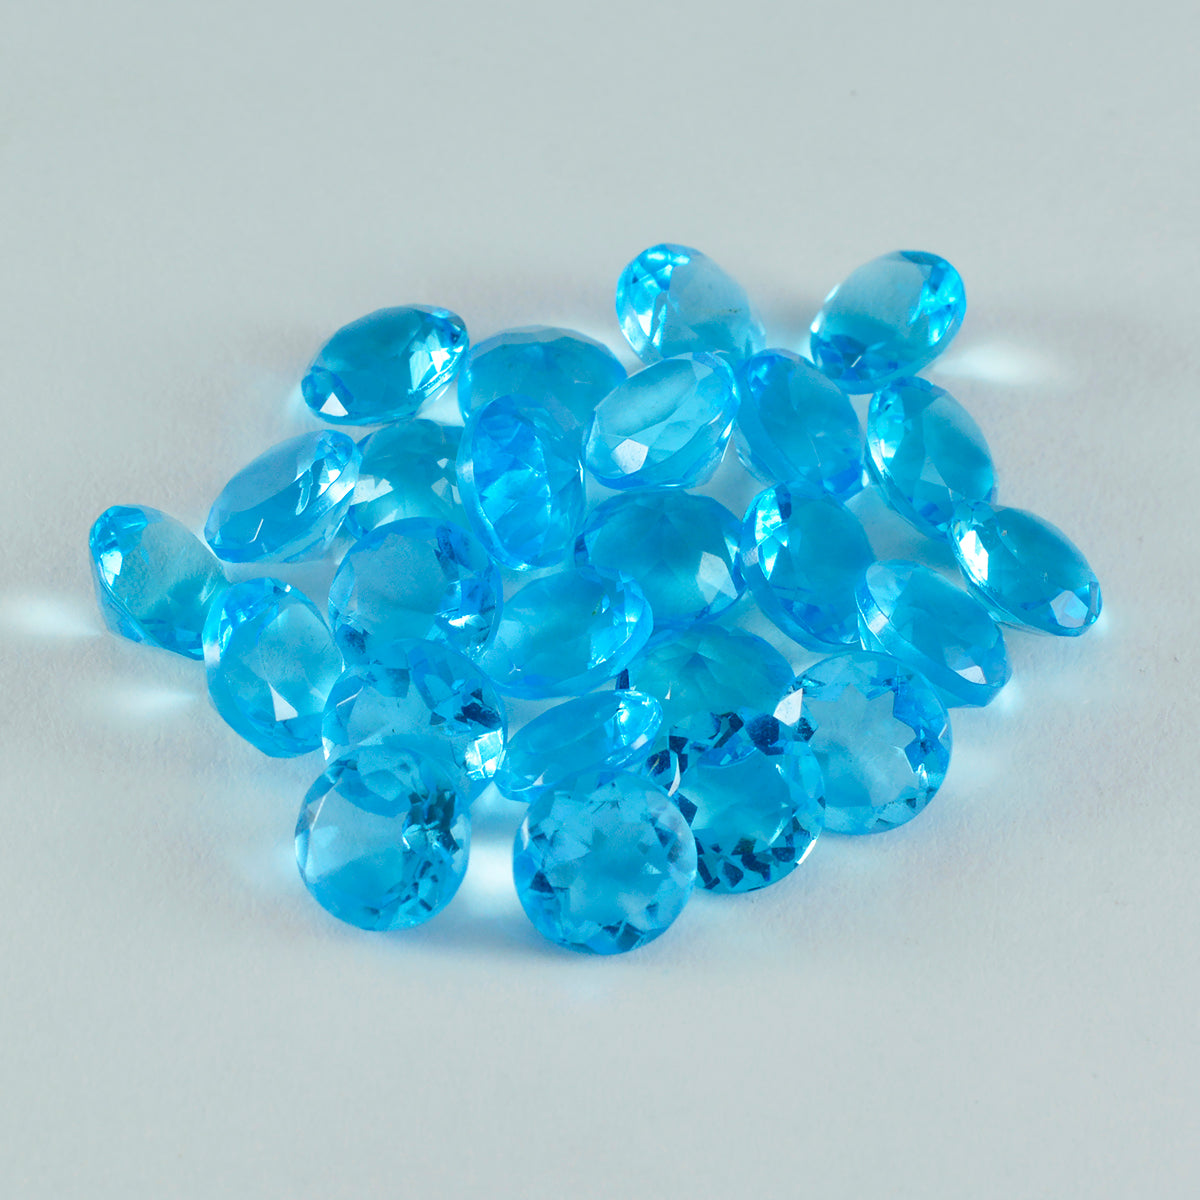 riyogems 1 шт. синий топаз cz граненый 7x7 мм круглая форма, натуральный камень удивительного качества